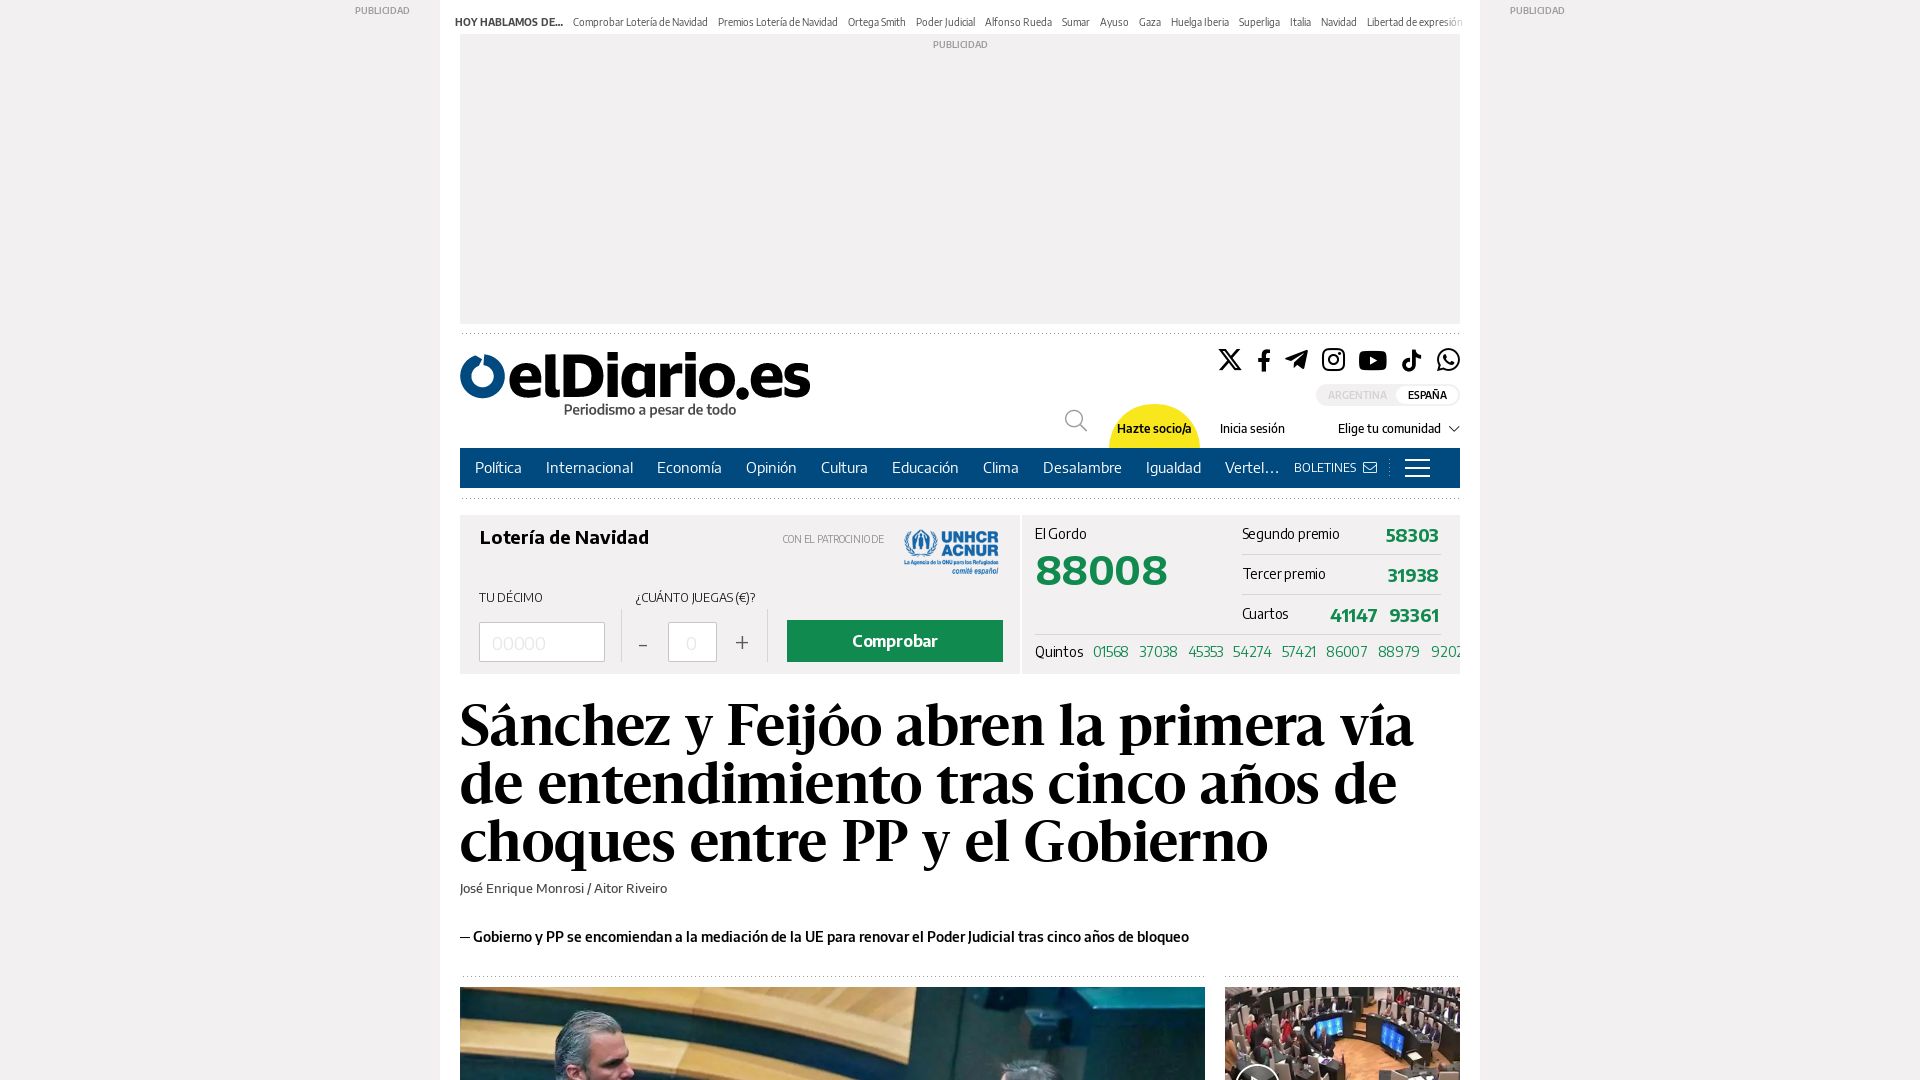 Estado web eldiario.es está   ONLINE